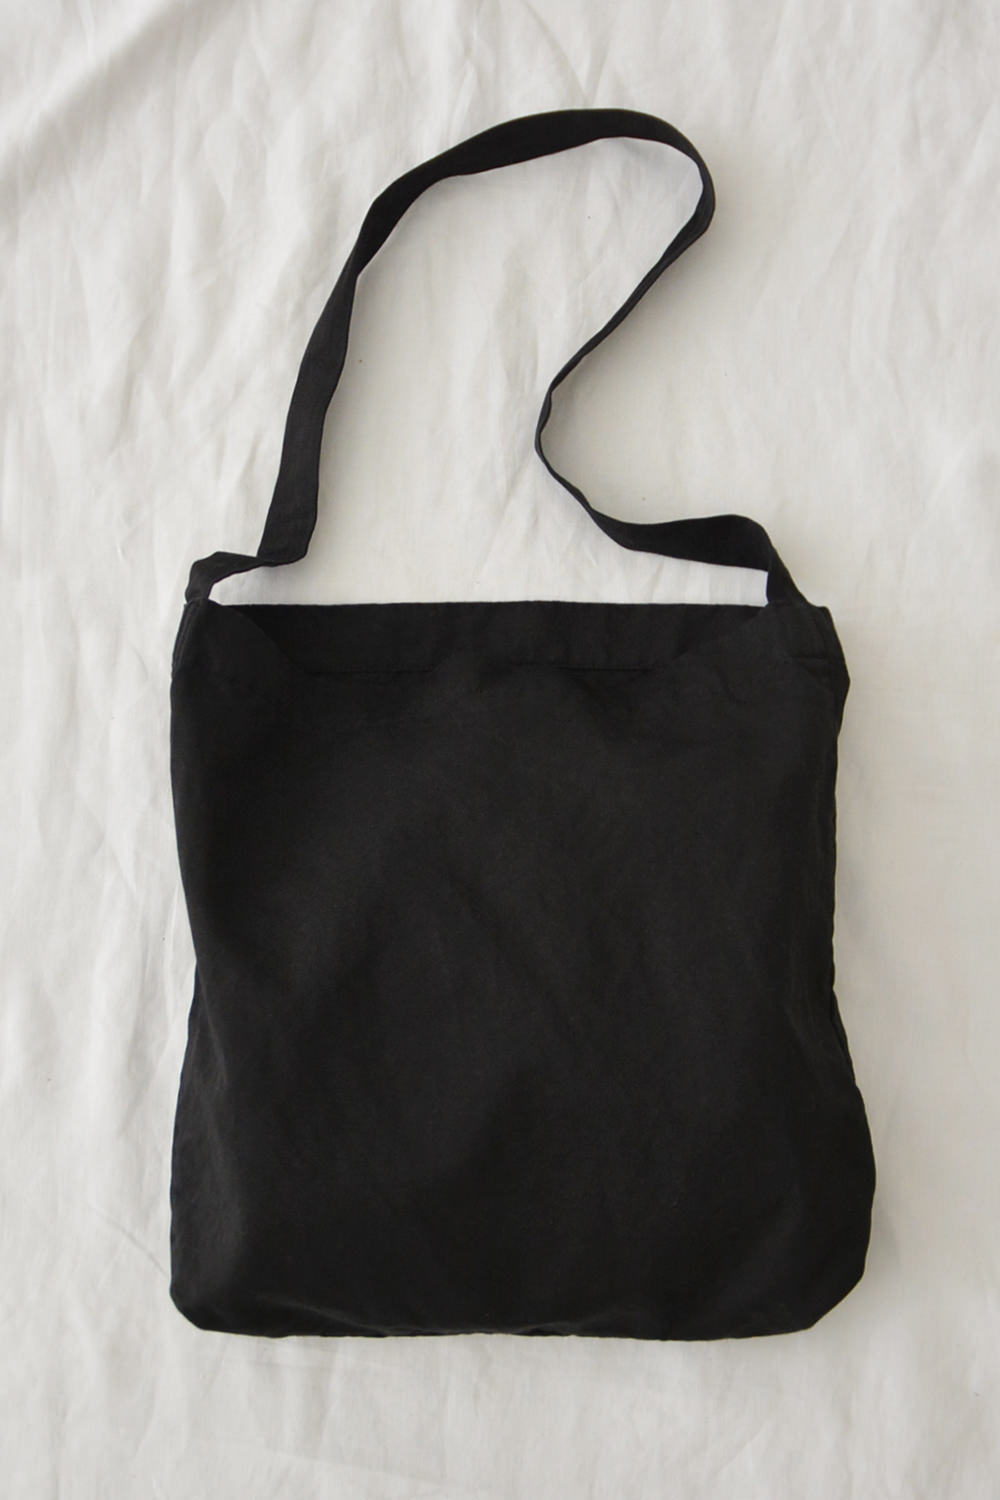 Makie - Dyed Shoulder Bag - Black. Main.